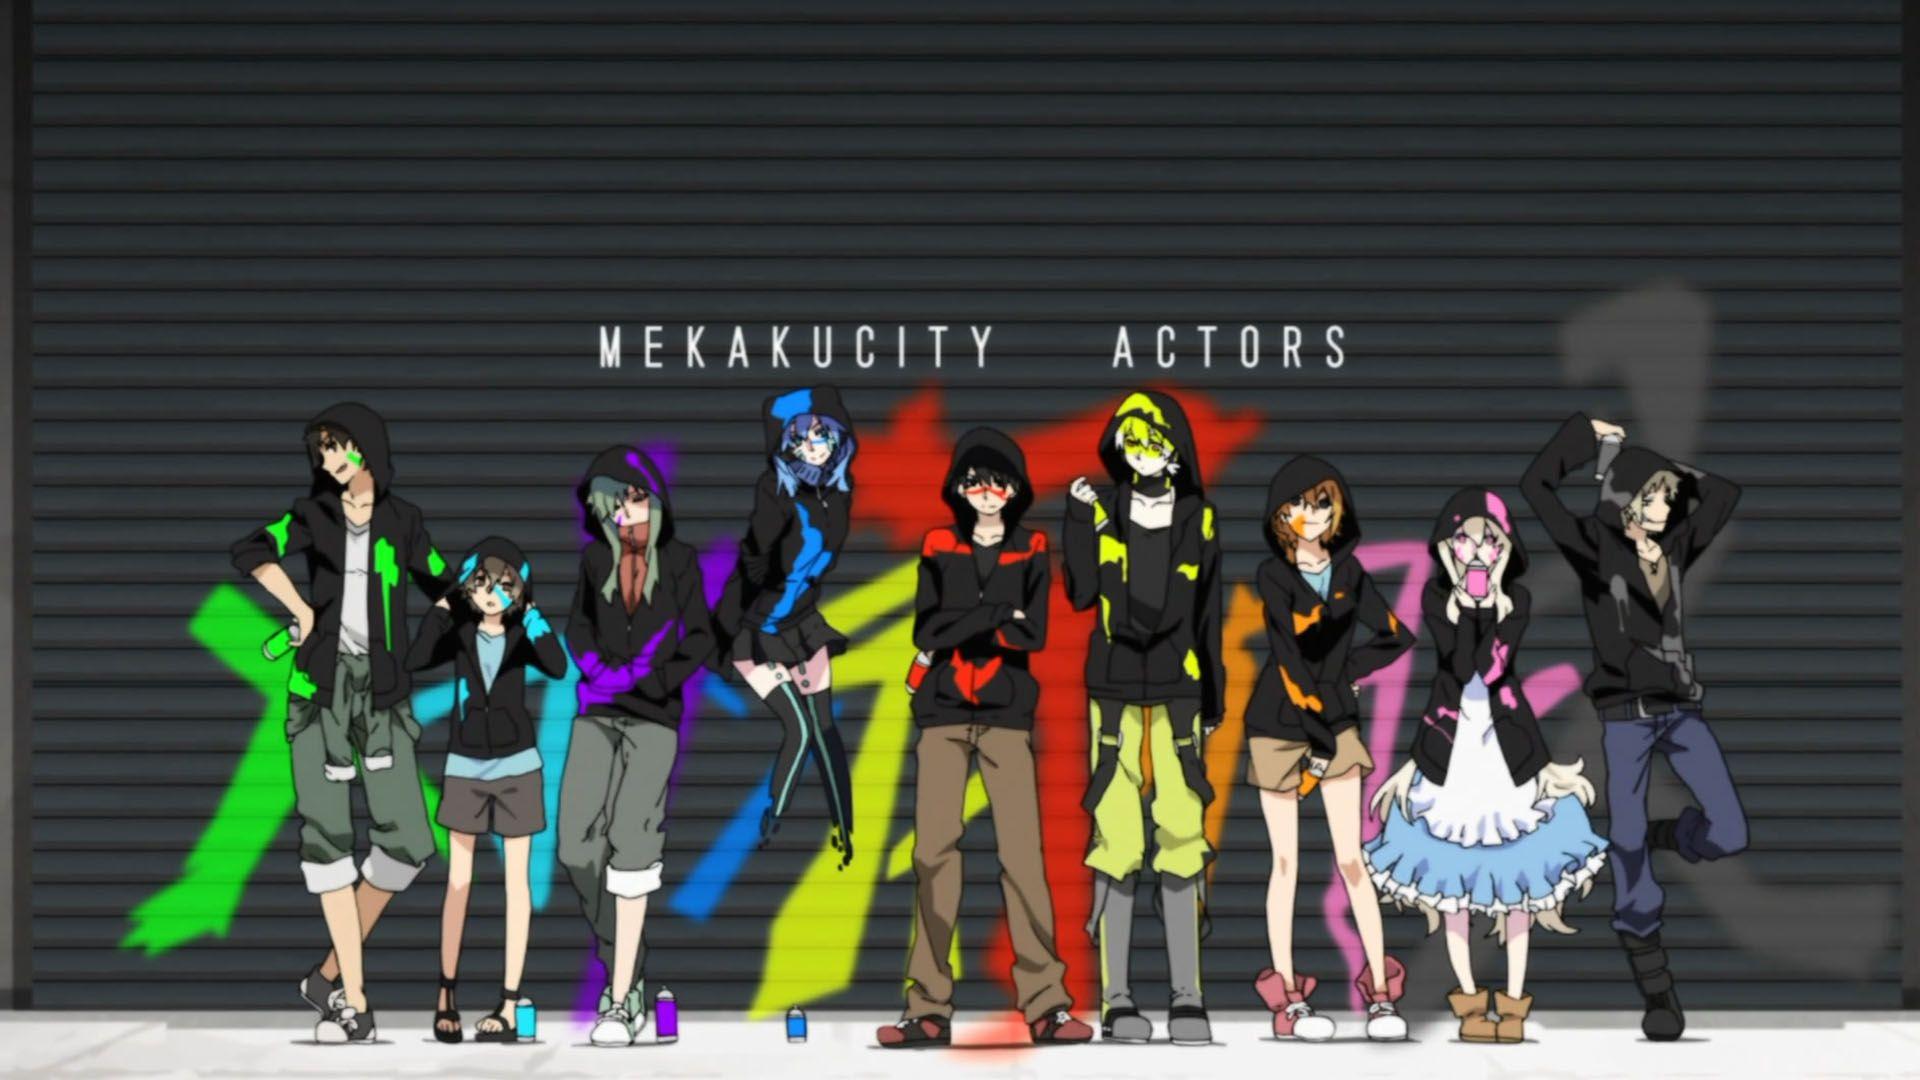 Mekakucity Actors 1080p Wallpaper. Places to Visit